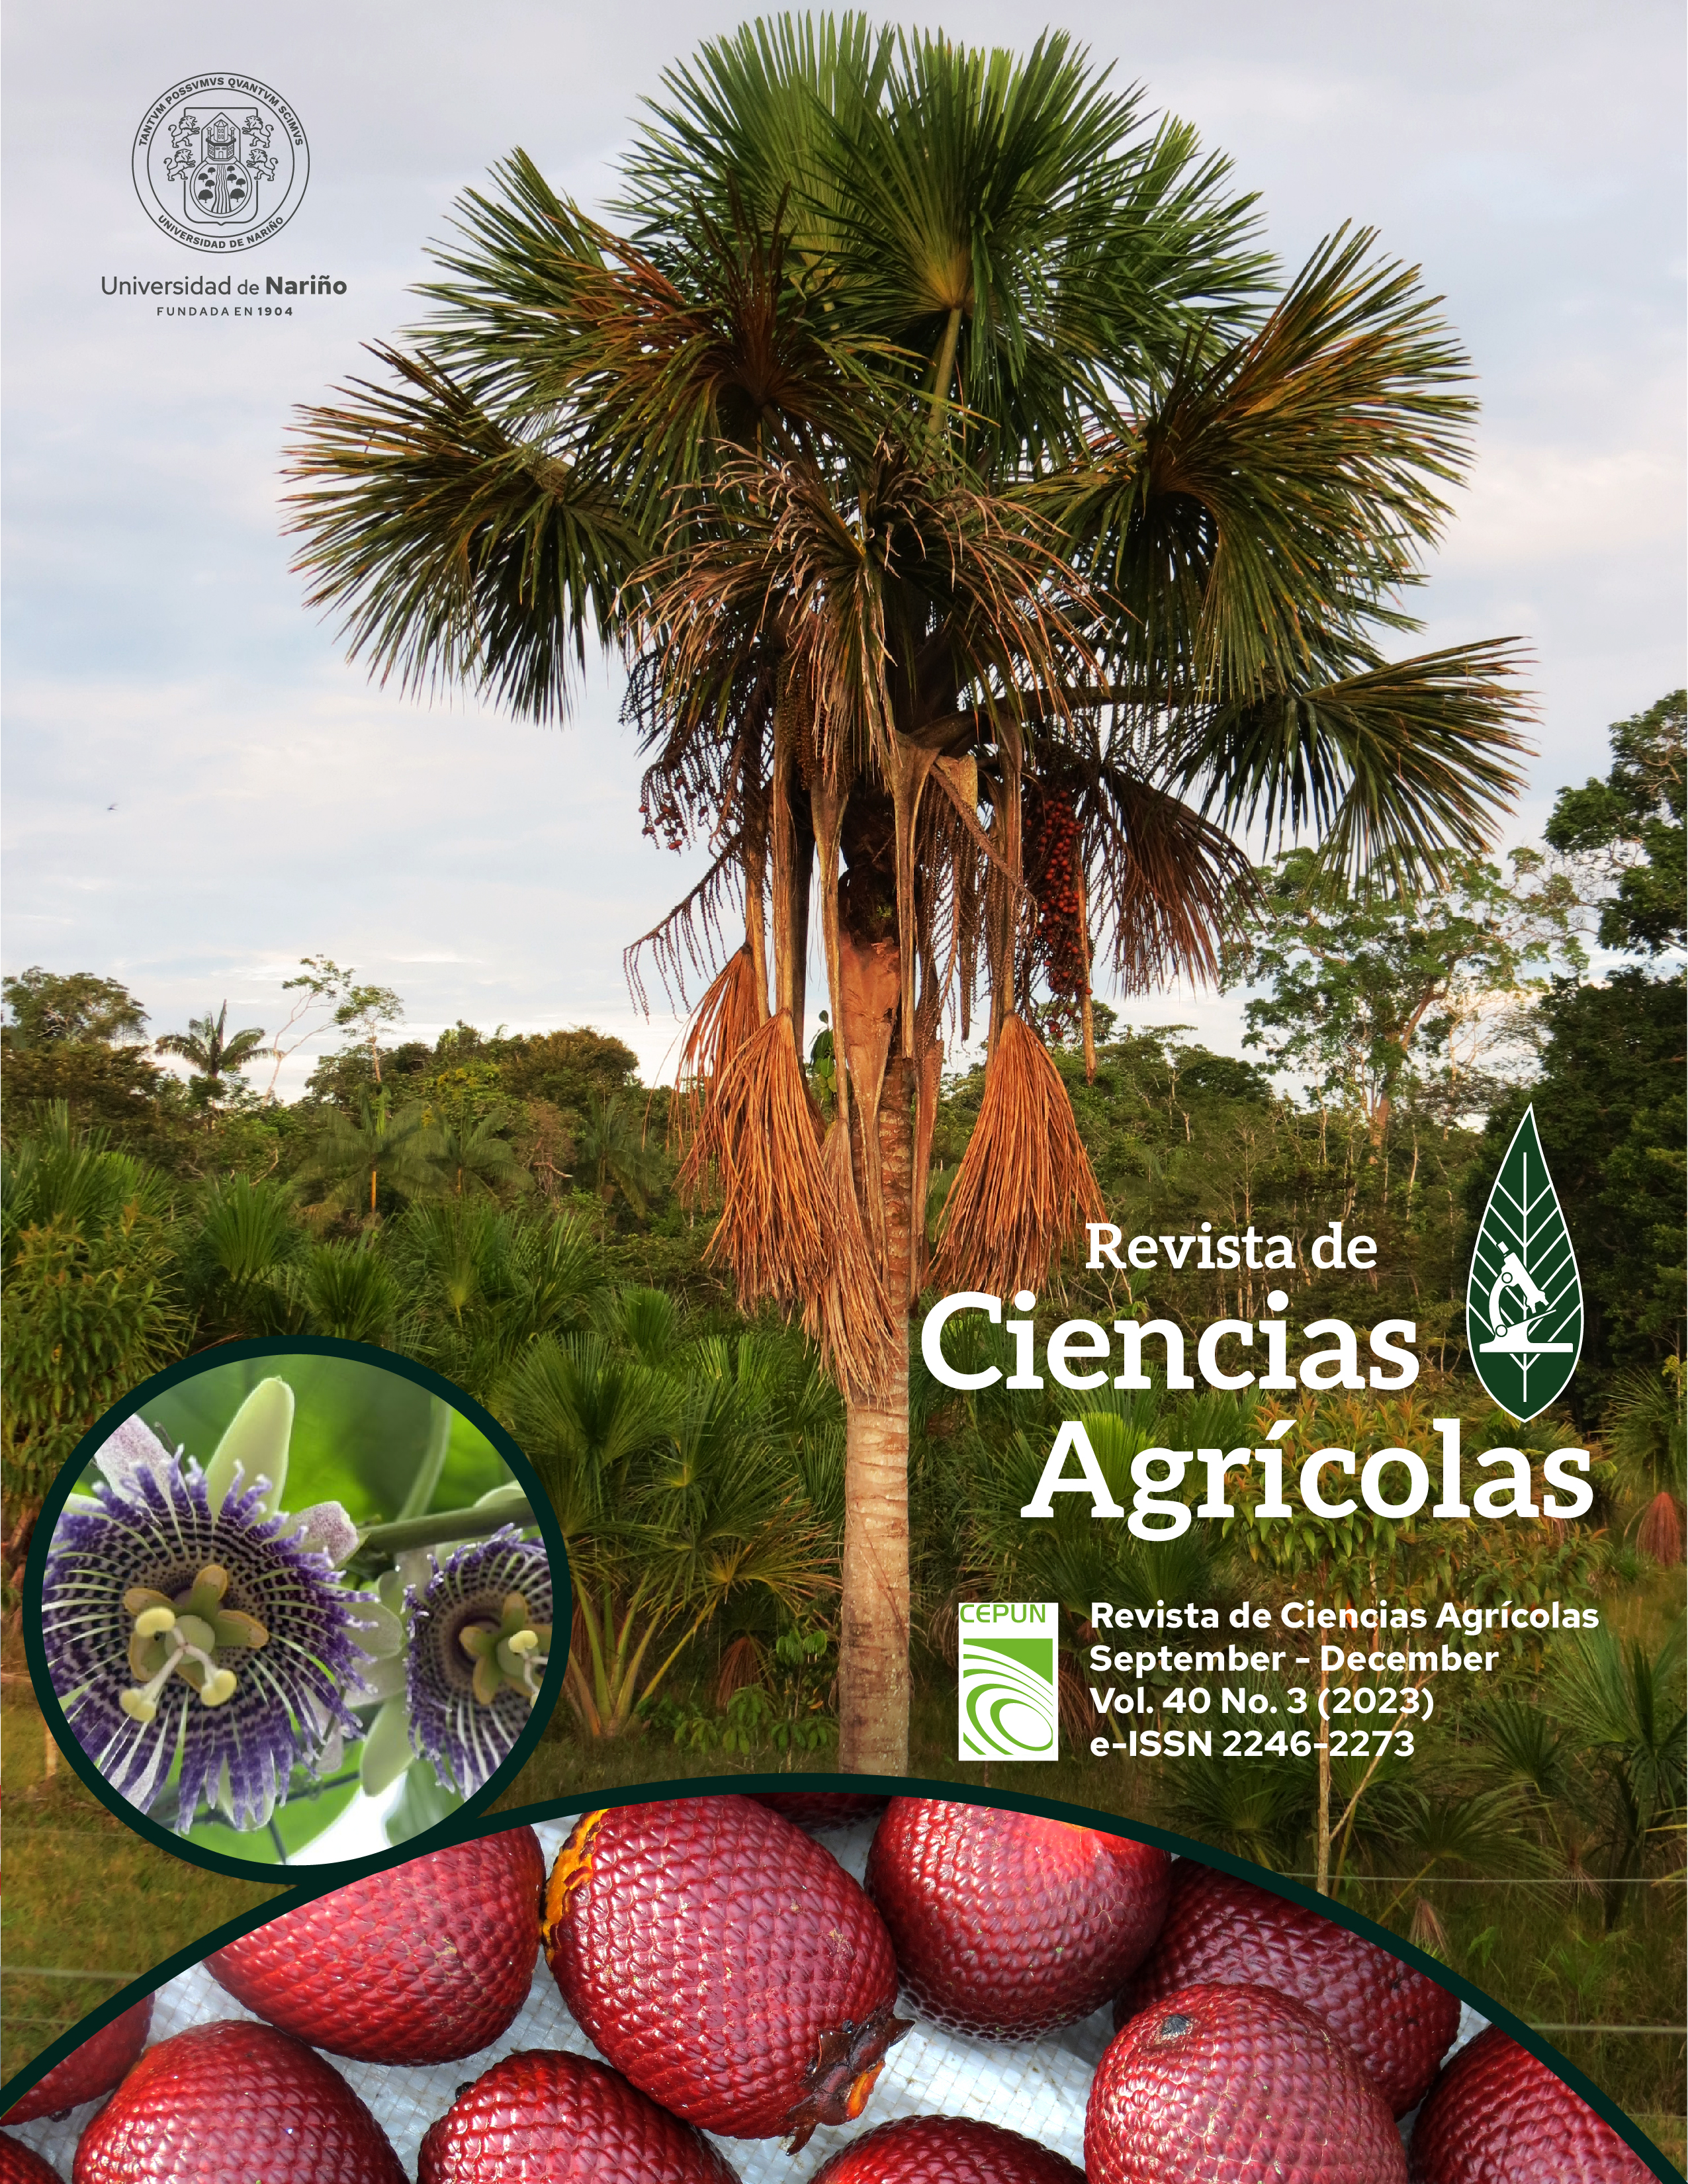 					Visualizar v. 40 n. 3 (2023):  Revista de Ciencias Agrícolas - Tercer semestre, Septiembre - Diciembre 2023
				